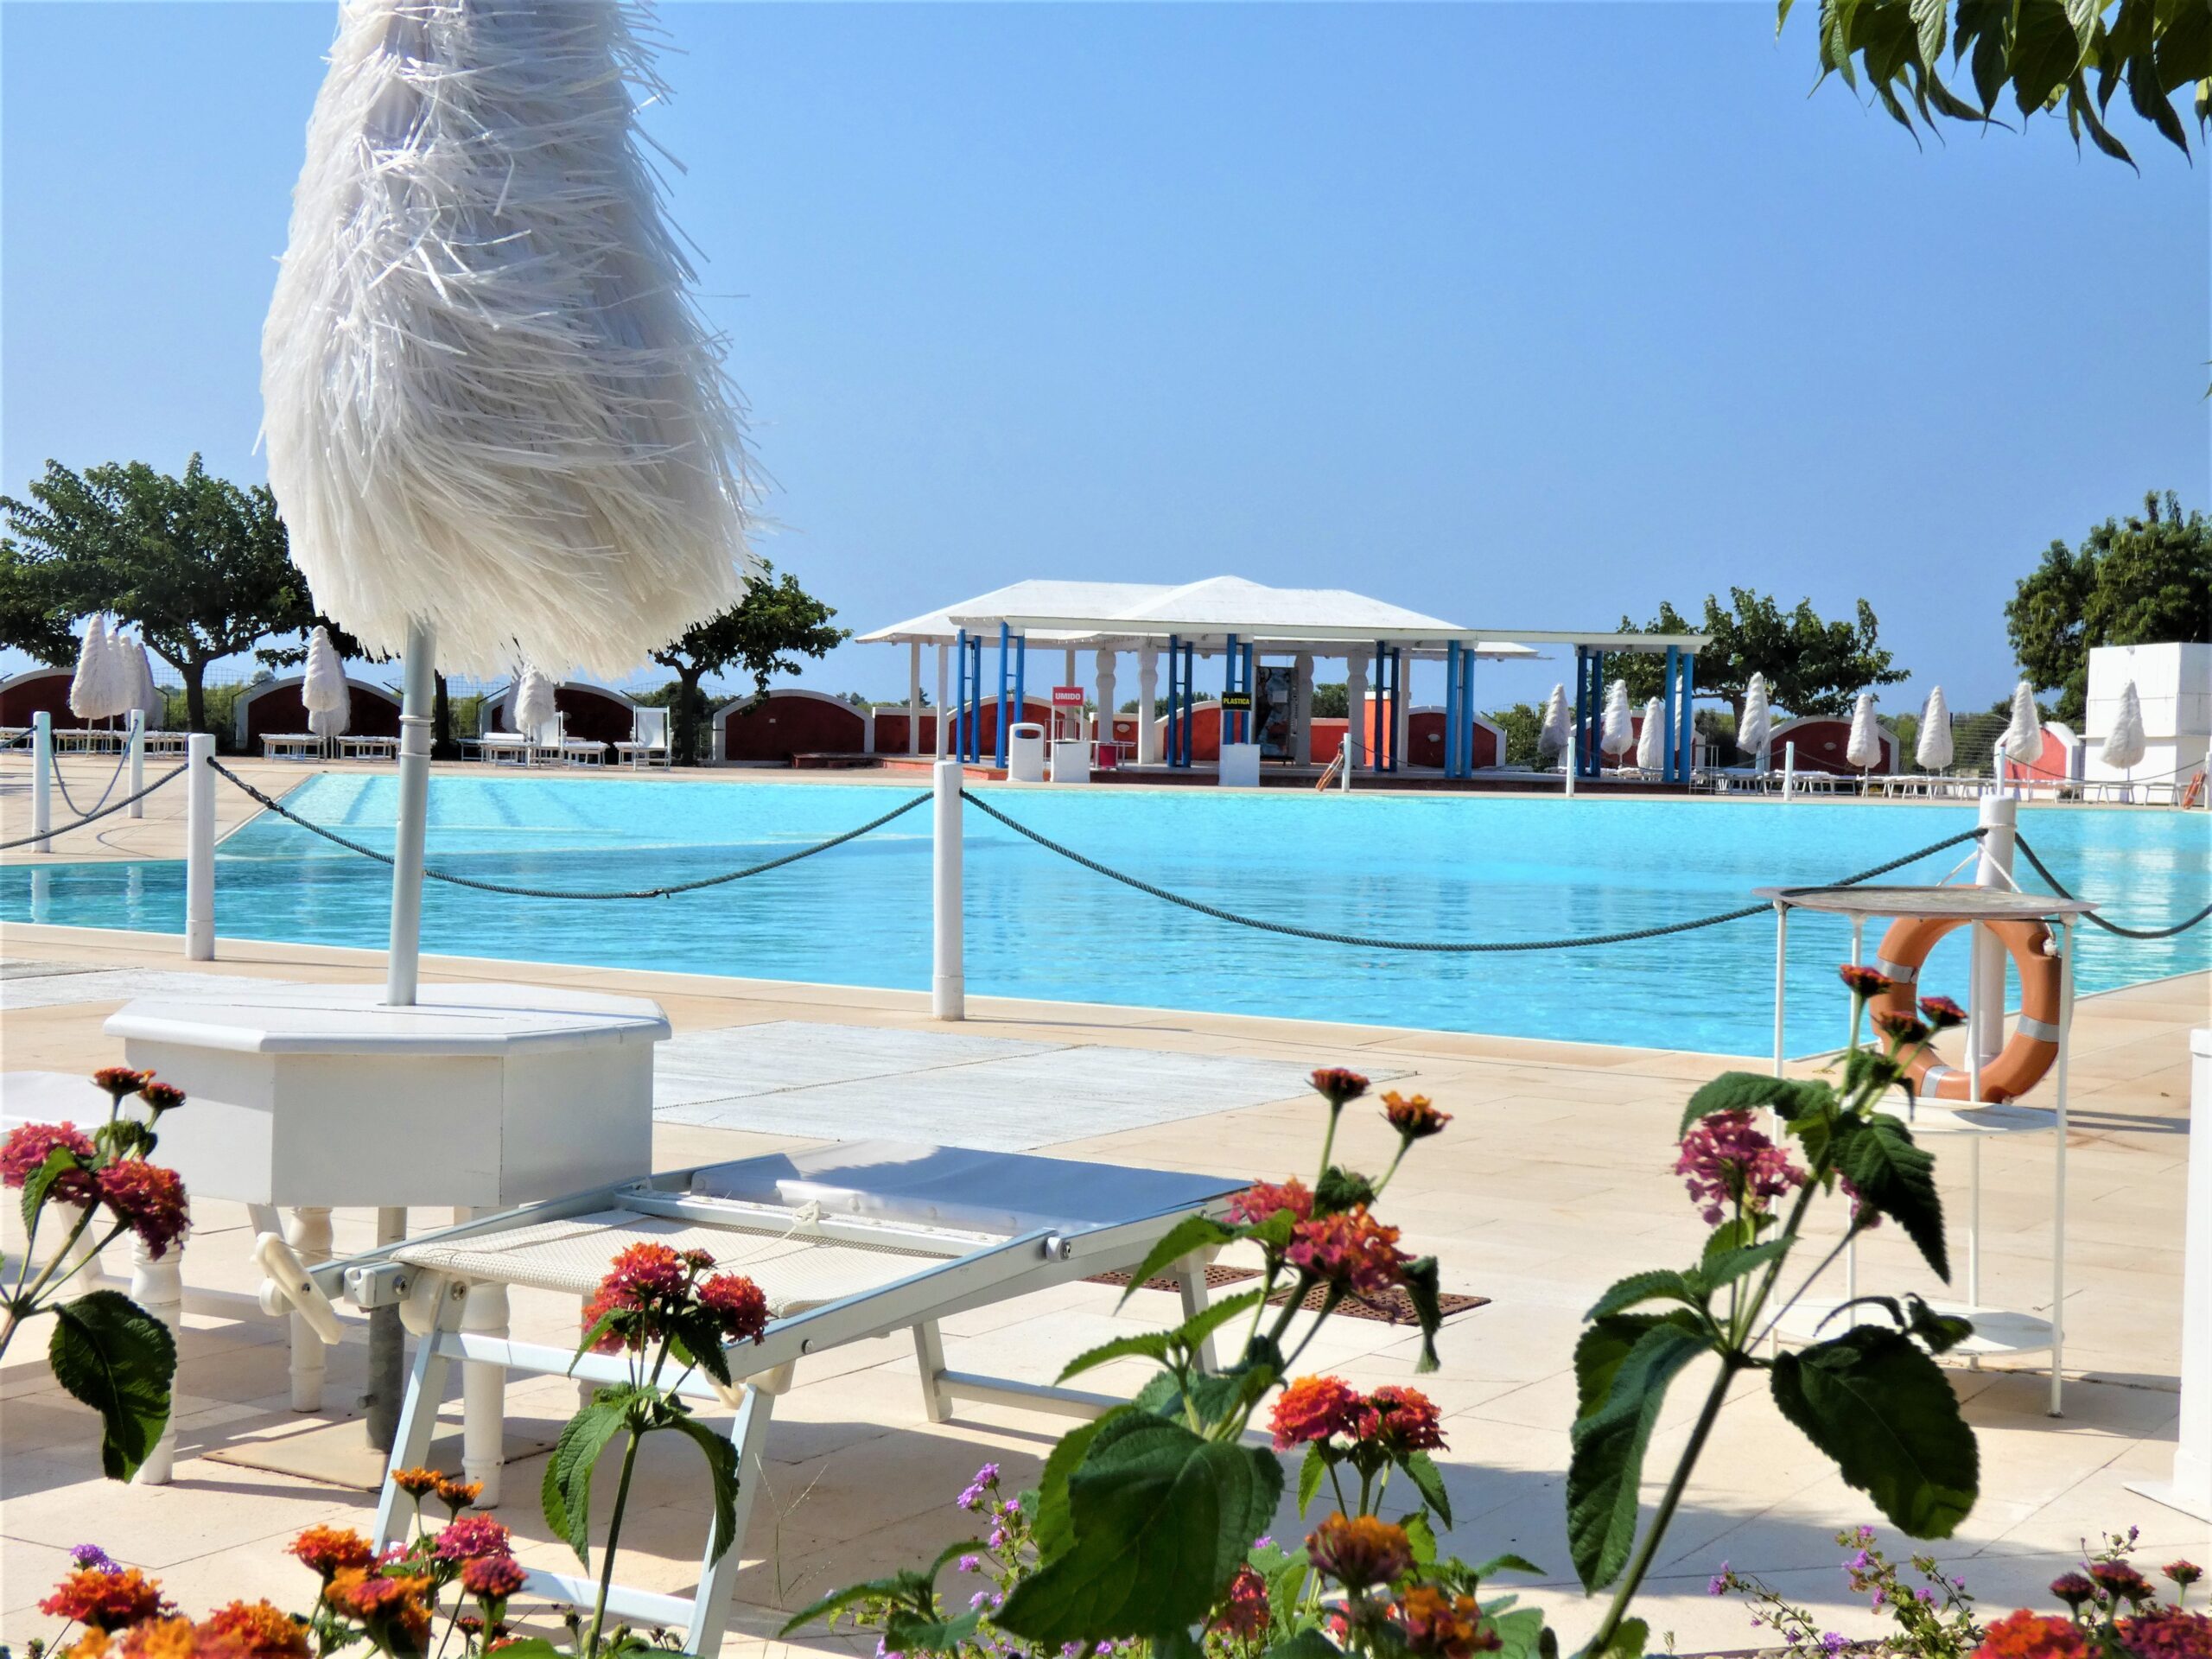 Villa con 5 camere e 4 bagni, piscina condominiale – Chiusurelle Village – Porto Cesareo (LE)